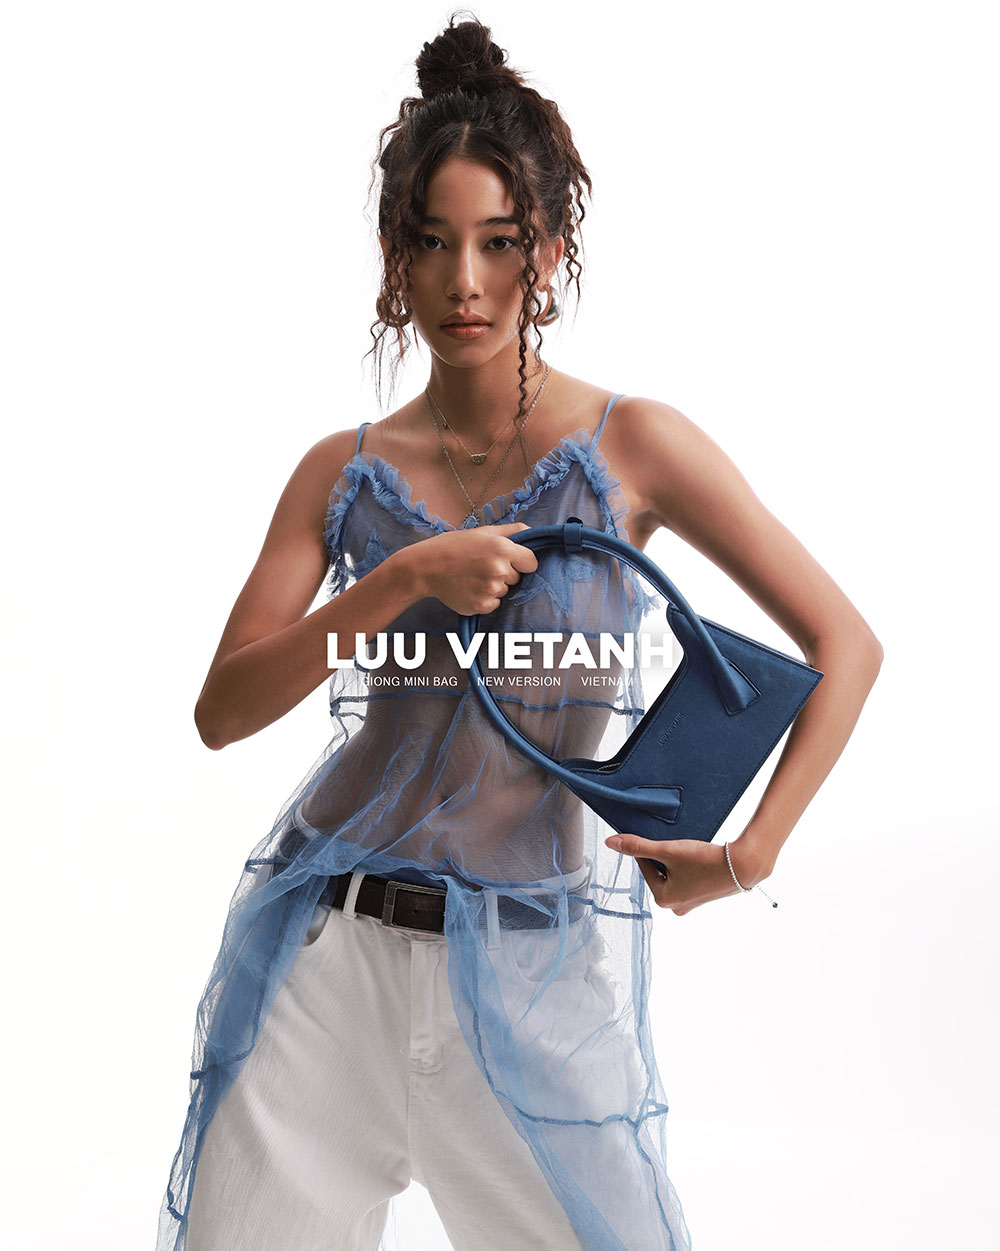 NTK Lưu Việt Anh: Gìn giữ văn hóa Việt qua từng chiếc túi, từng bước chinh phục thành công khách hàng nội địa - Ảnh 1.